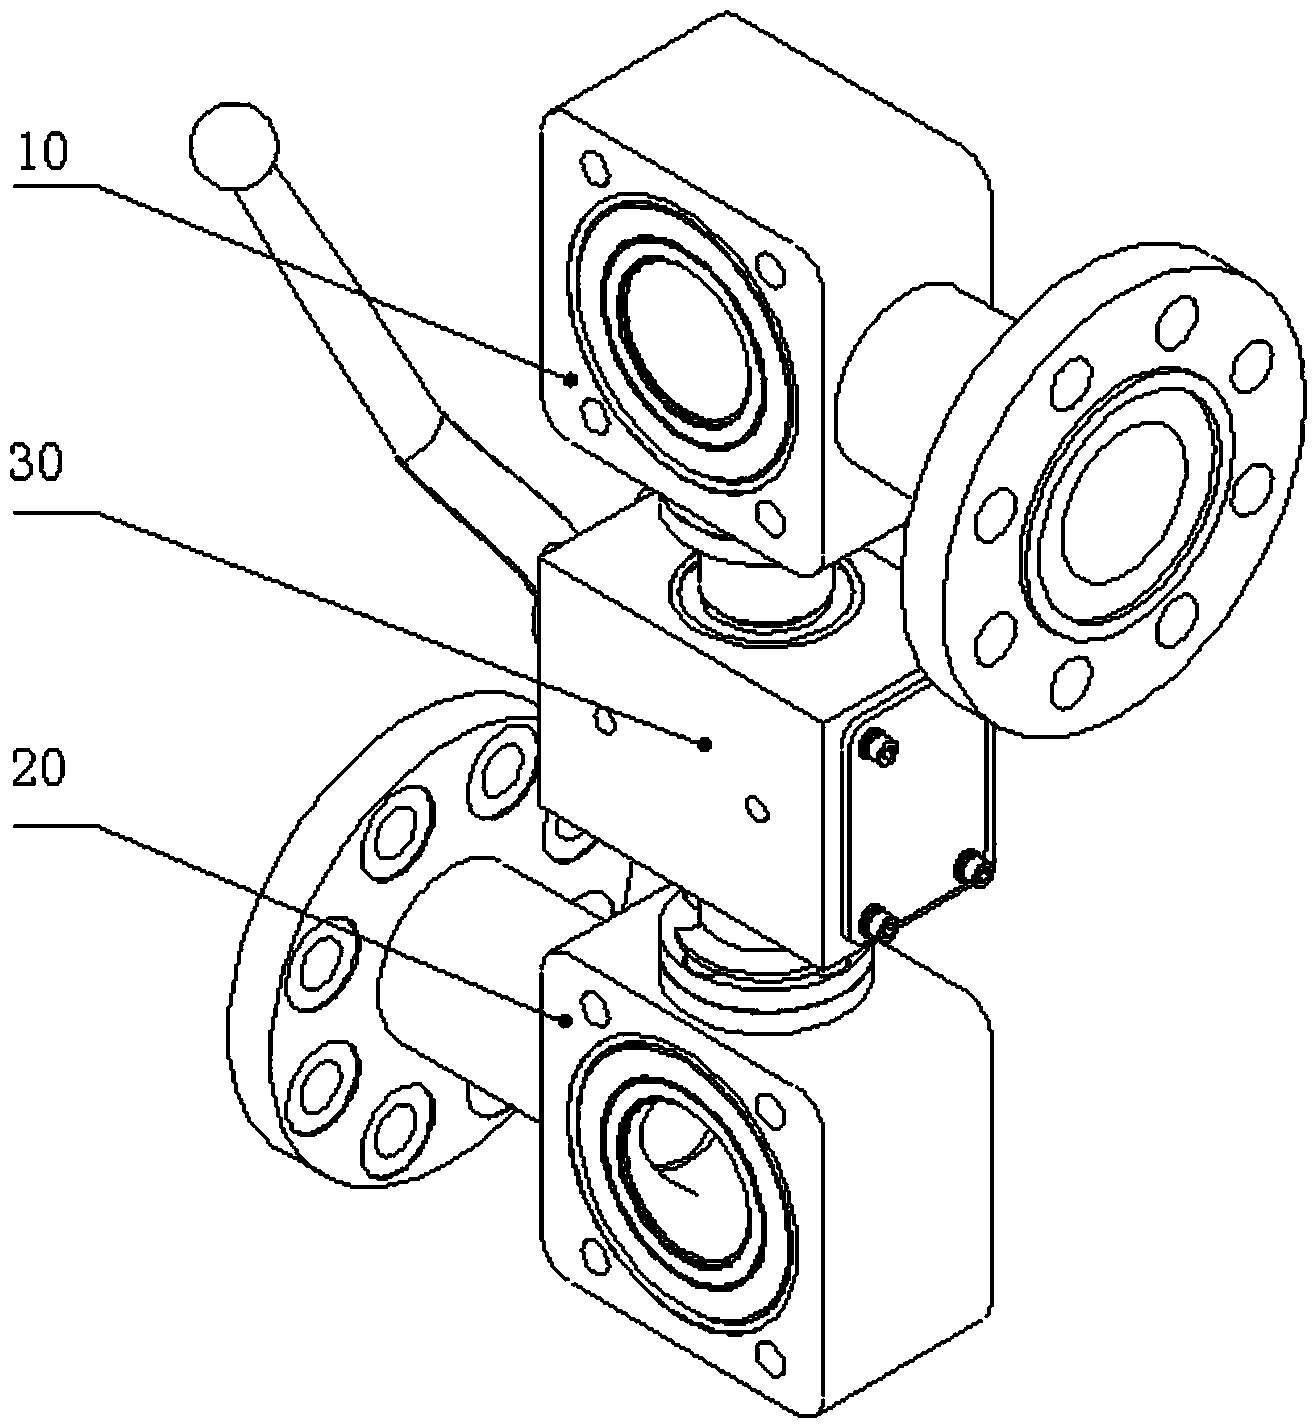 Six-way switching ball valve